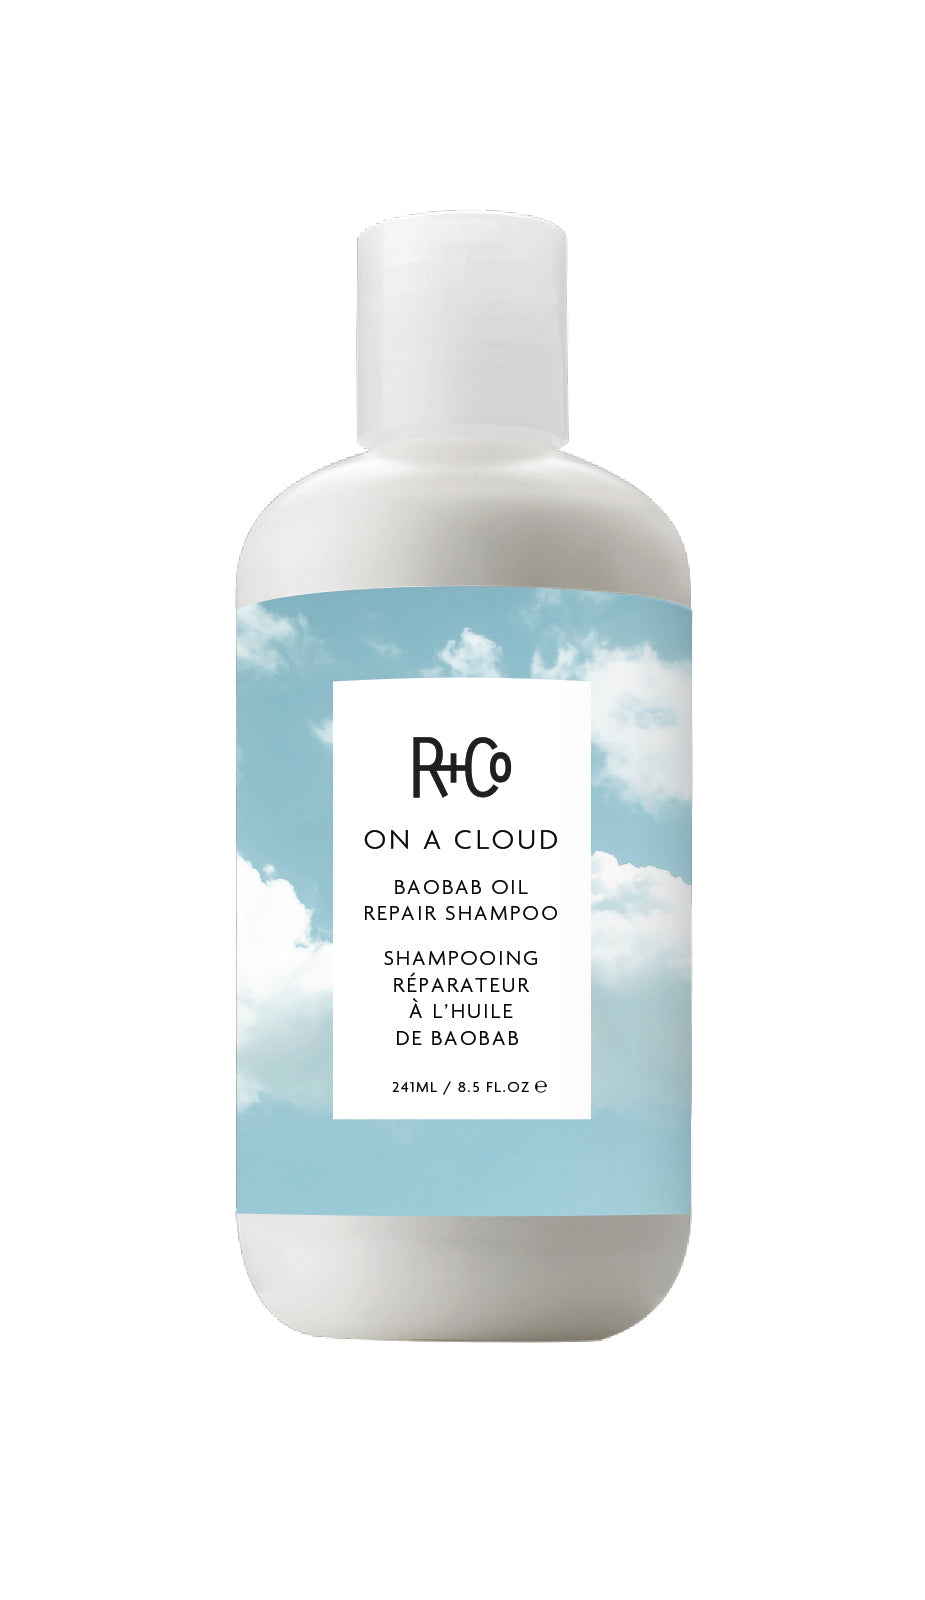 R+Co ON A CLOUD / Repair shampoo 251ml